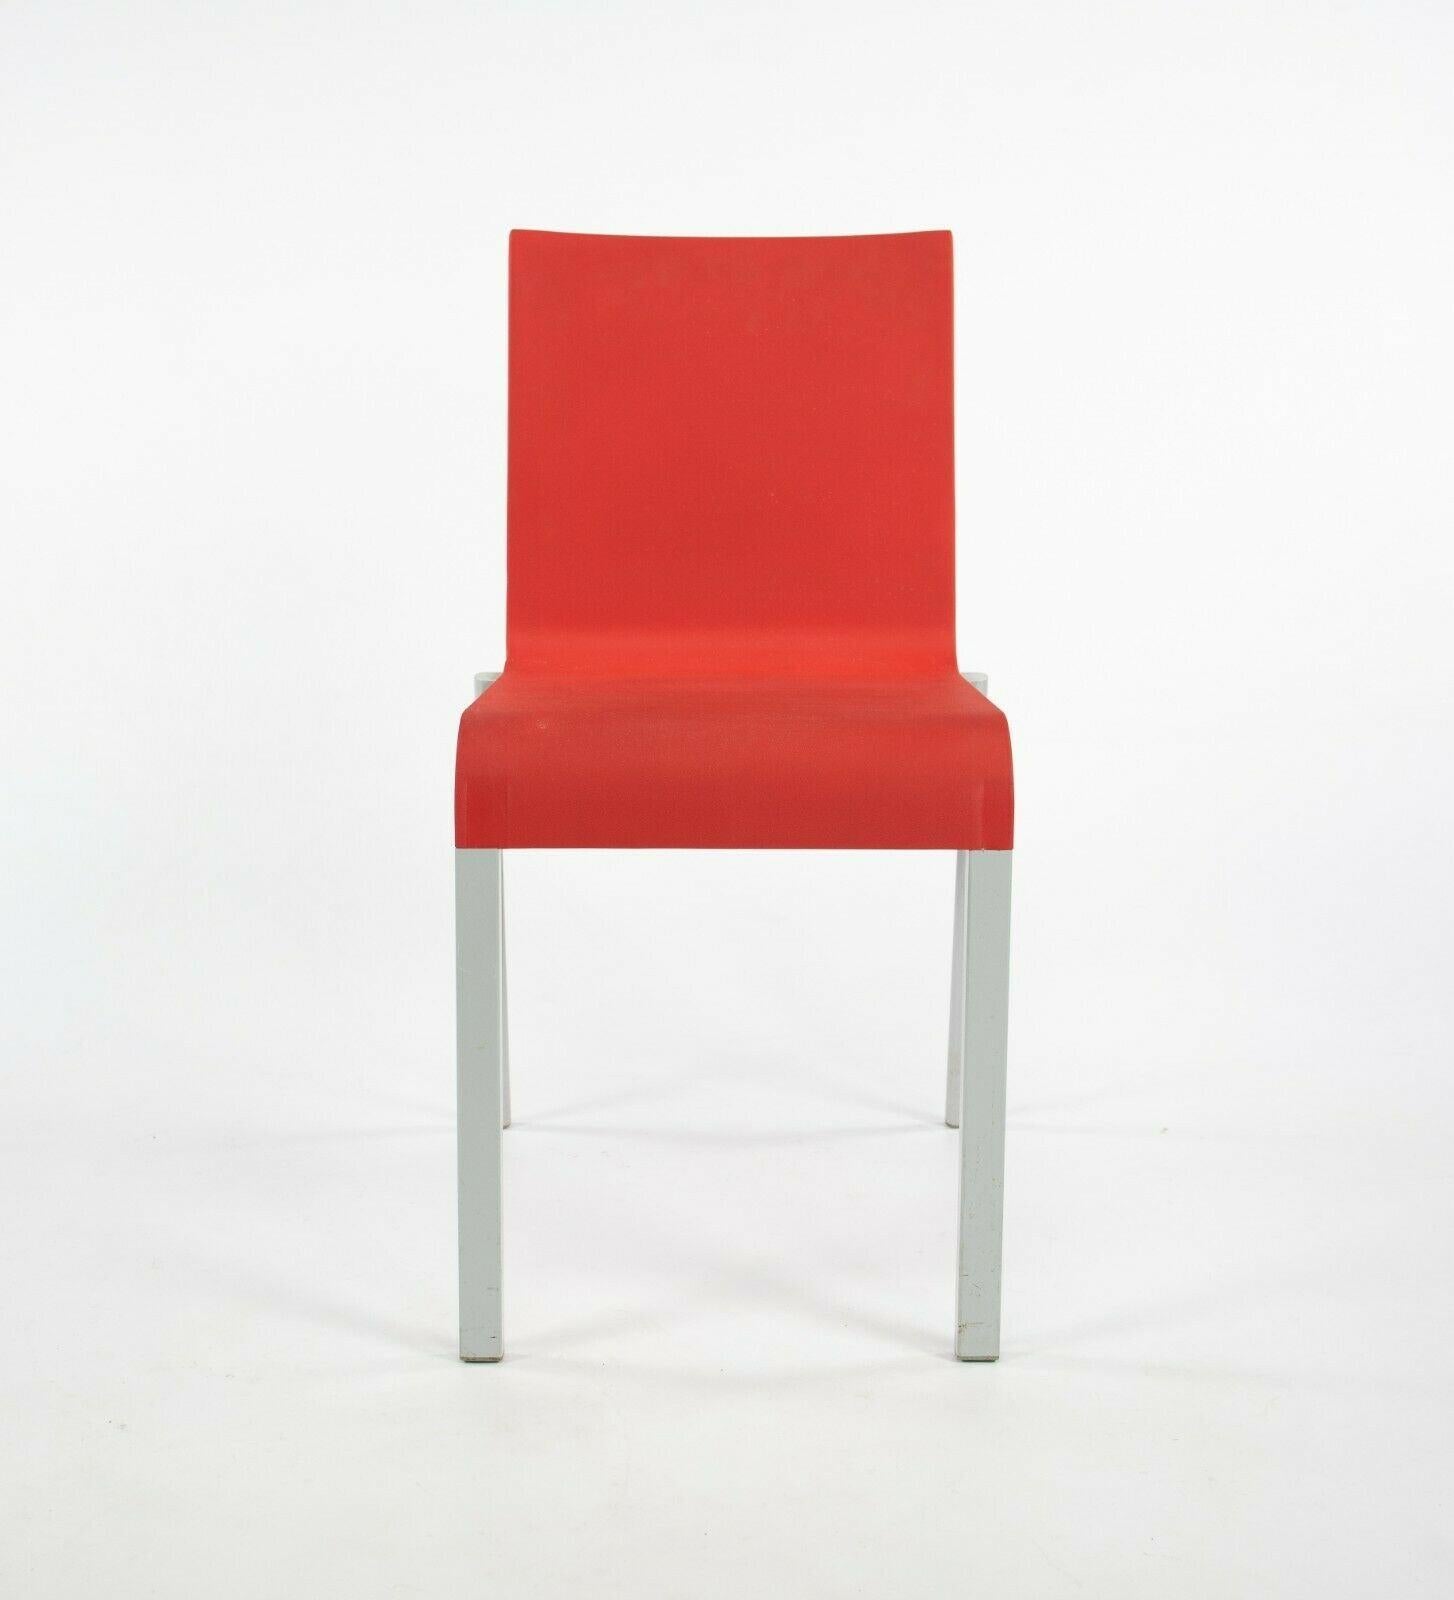 Zum Verkauf stehen mehrere rote Vitra .03 Stapelstühle von Maarten Van Severen (wir haben viele zur Verfügung, aber der angegebene Preis ist für jeden Stuhl). Dies ist der erste Industriestuhl von Maarten Van Severen. Er hat eine klare und